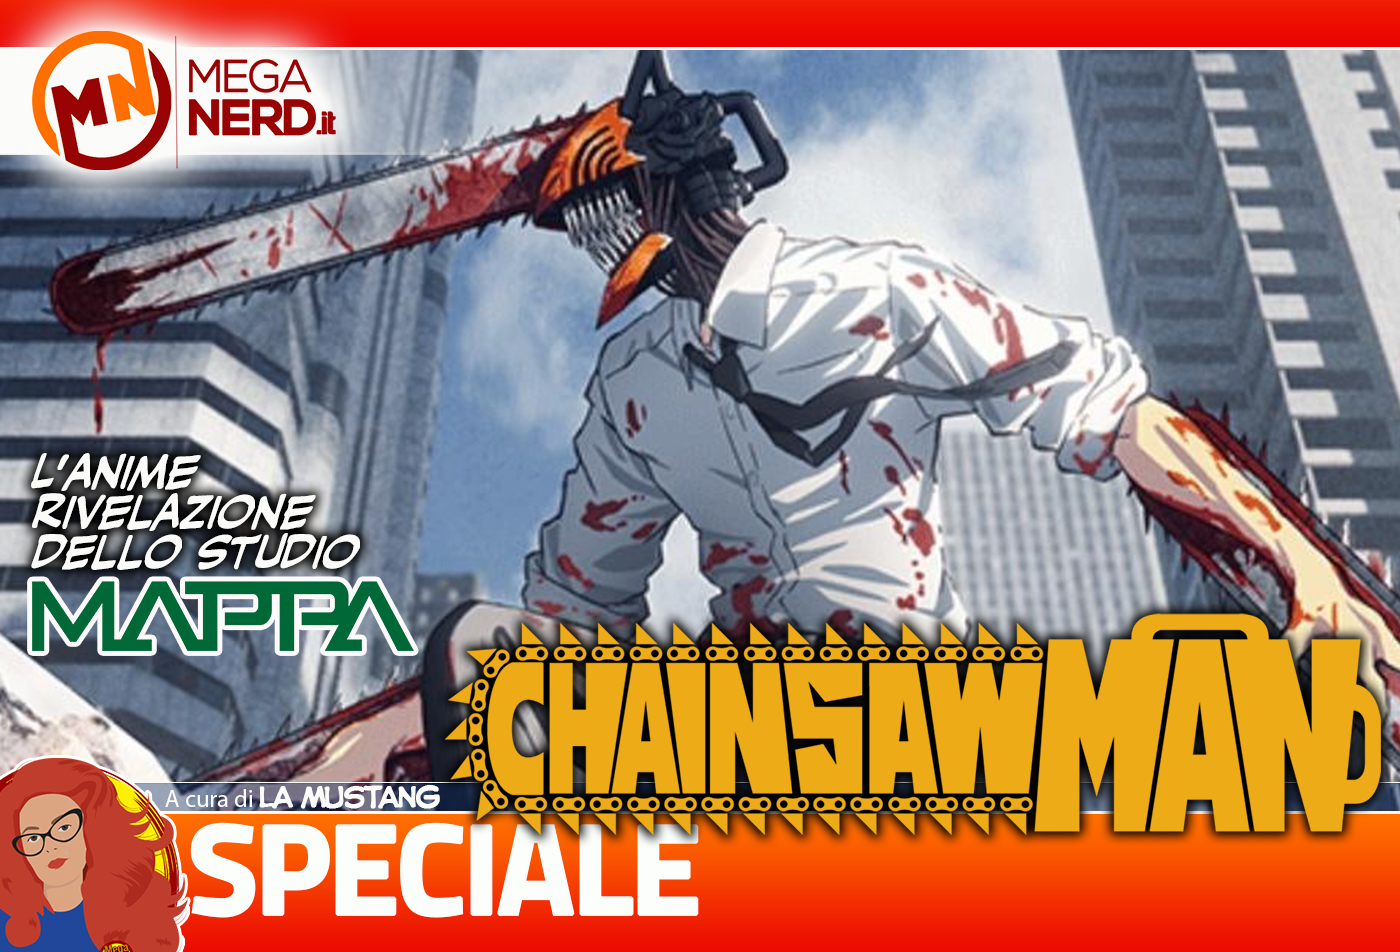 Chainsaw Man - Focus sull'anime rivelazione dello Studio MAPPA